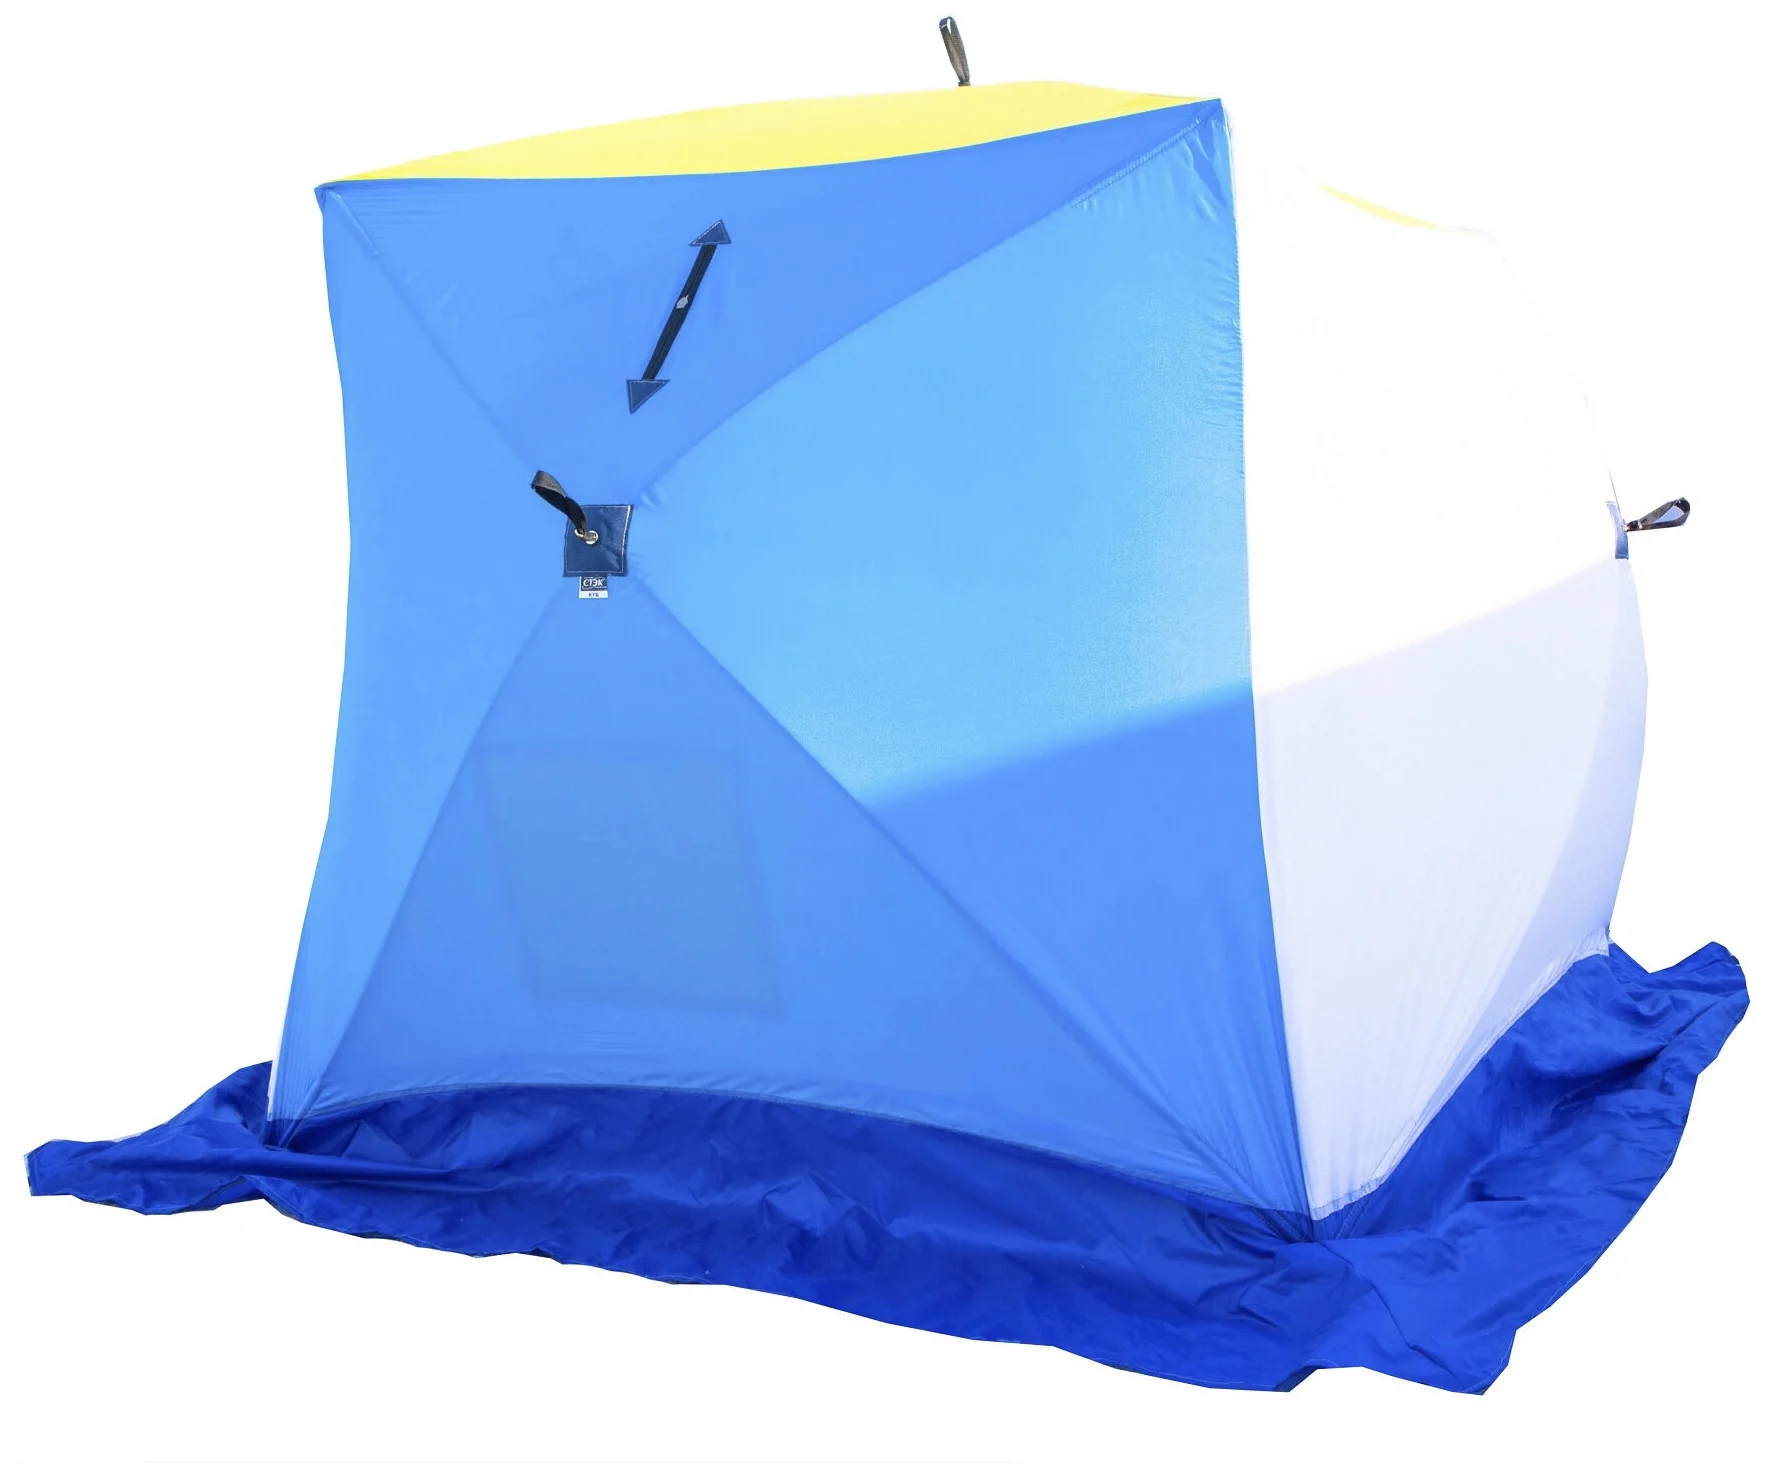 СТЭК Куб 2 - с внутренней палаткой, форма: нестандартная